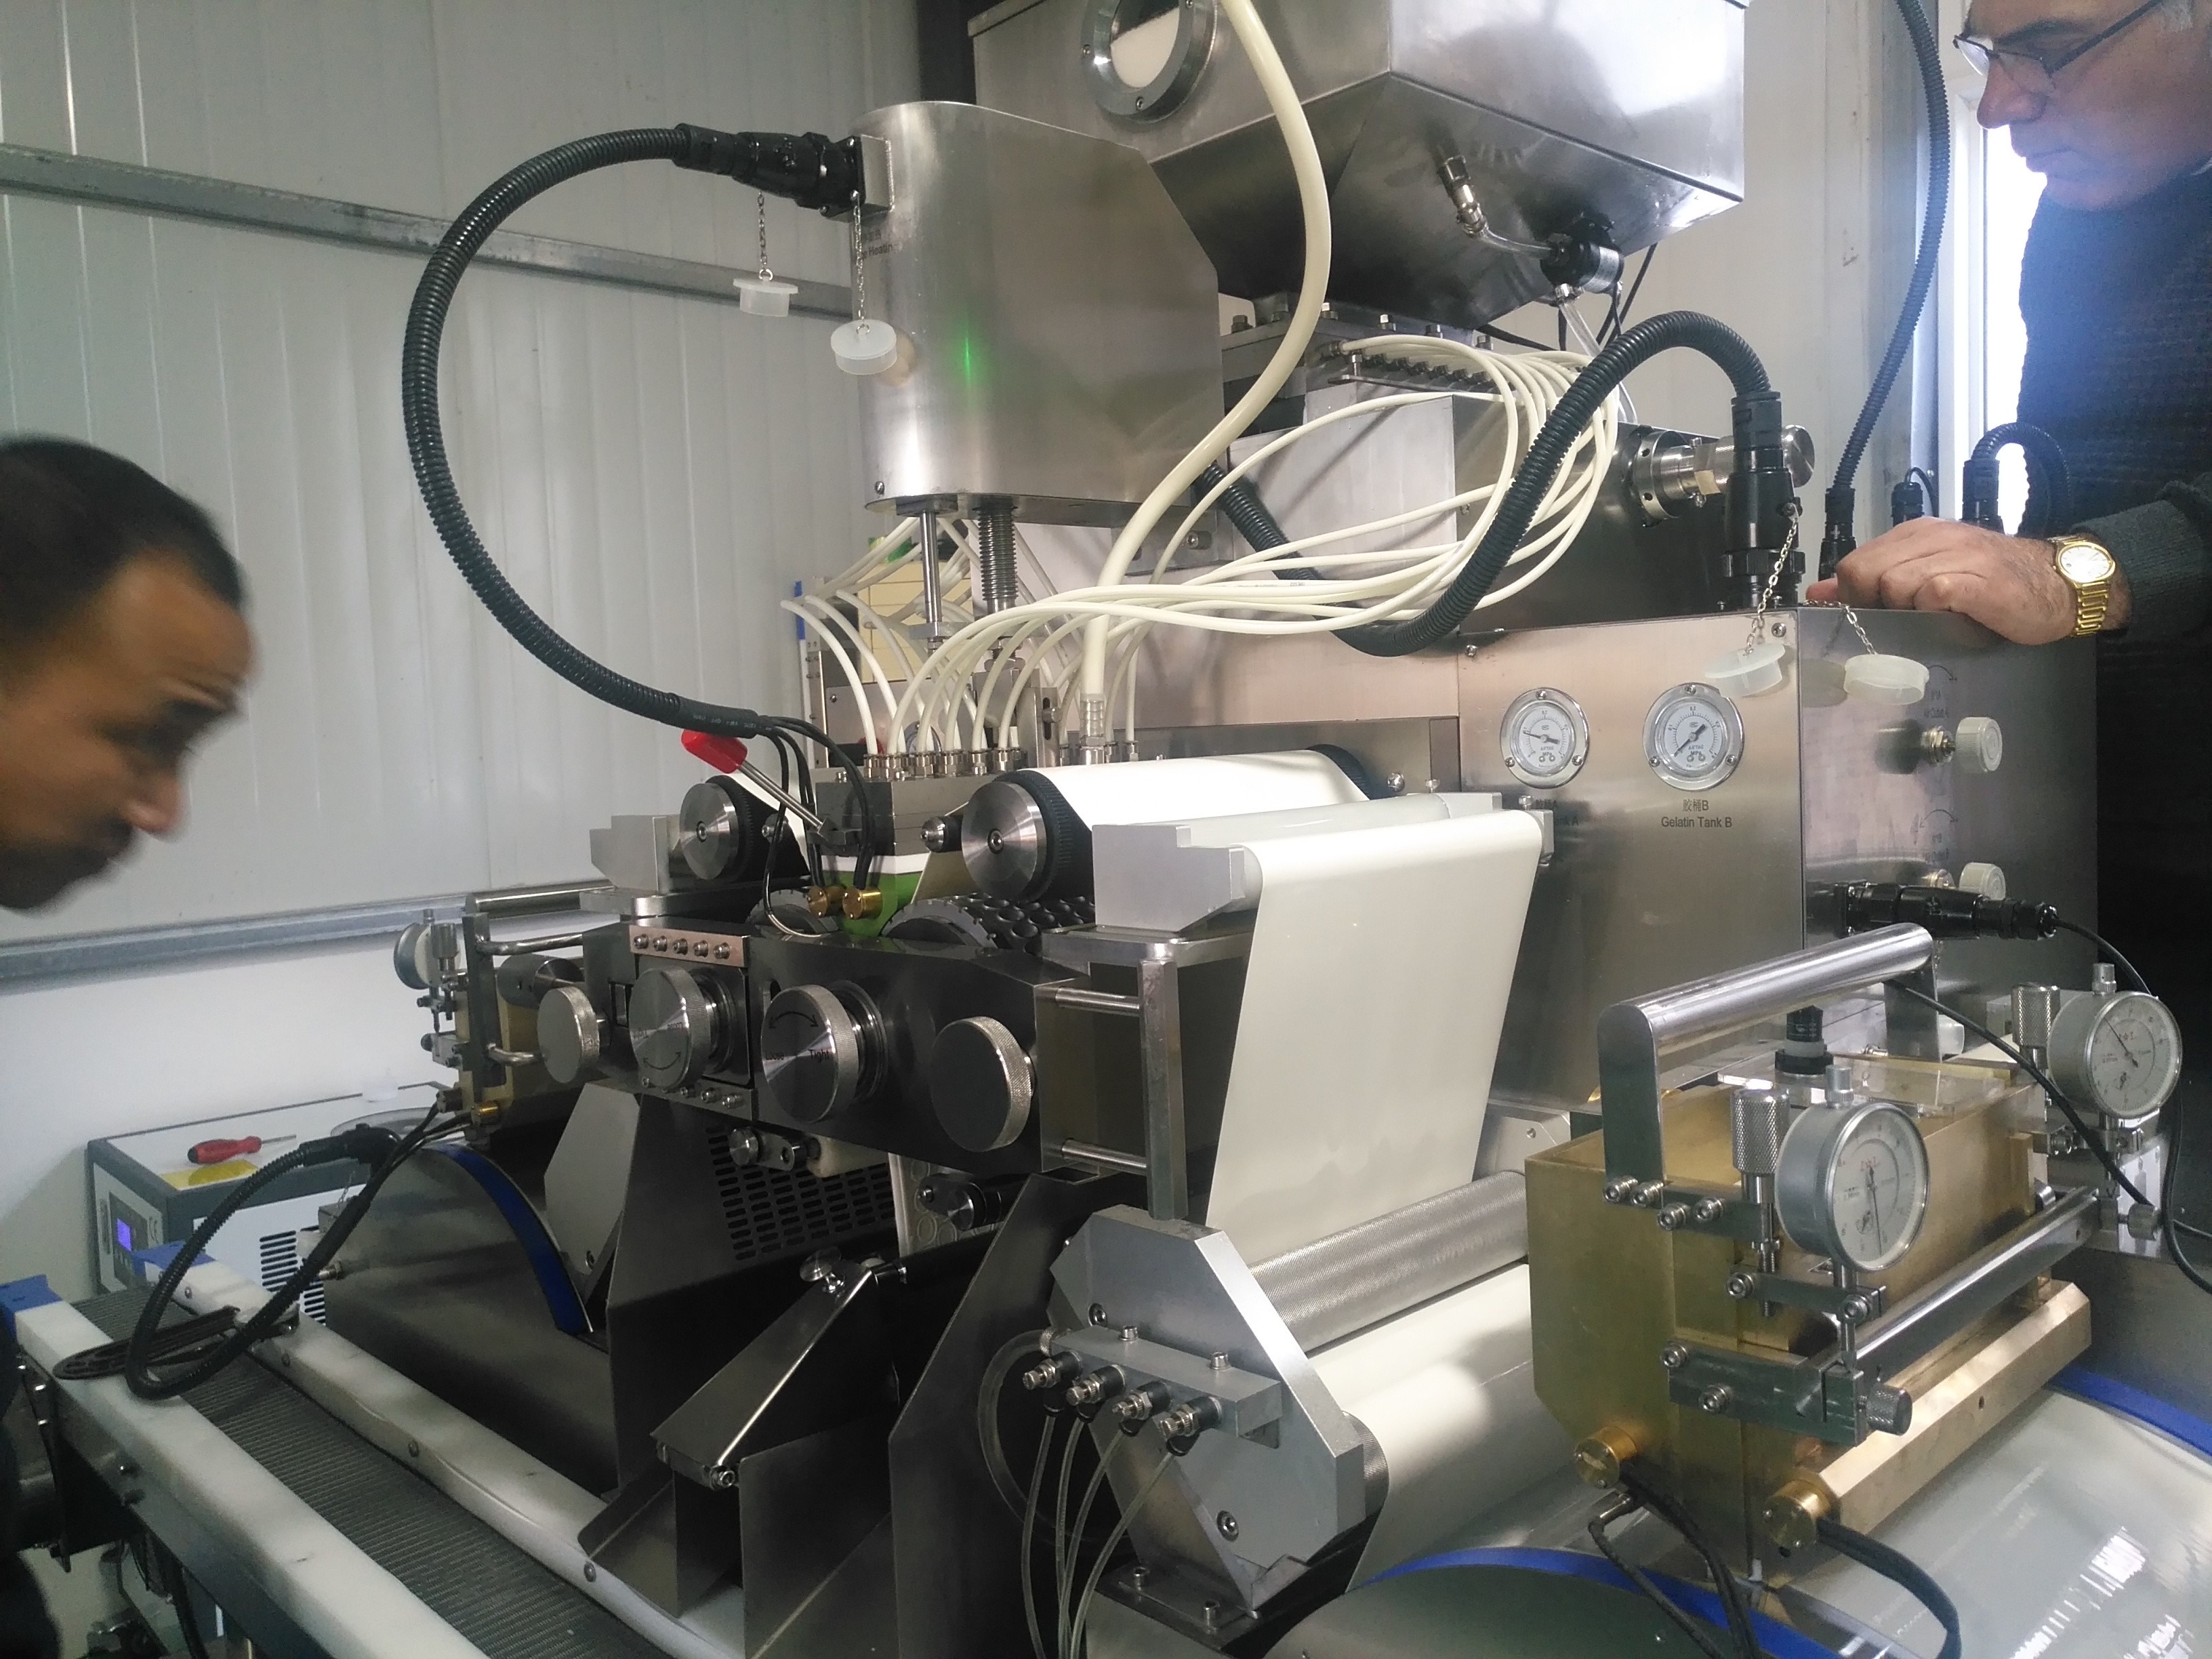 Yumuşak Kapsül Yapımı İçin Paslanmaz Çelik Softgel Kapsülleme Makinesi 1 Yıl Garanti